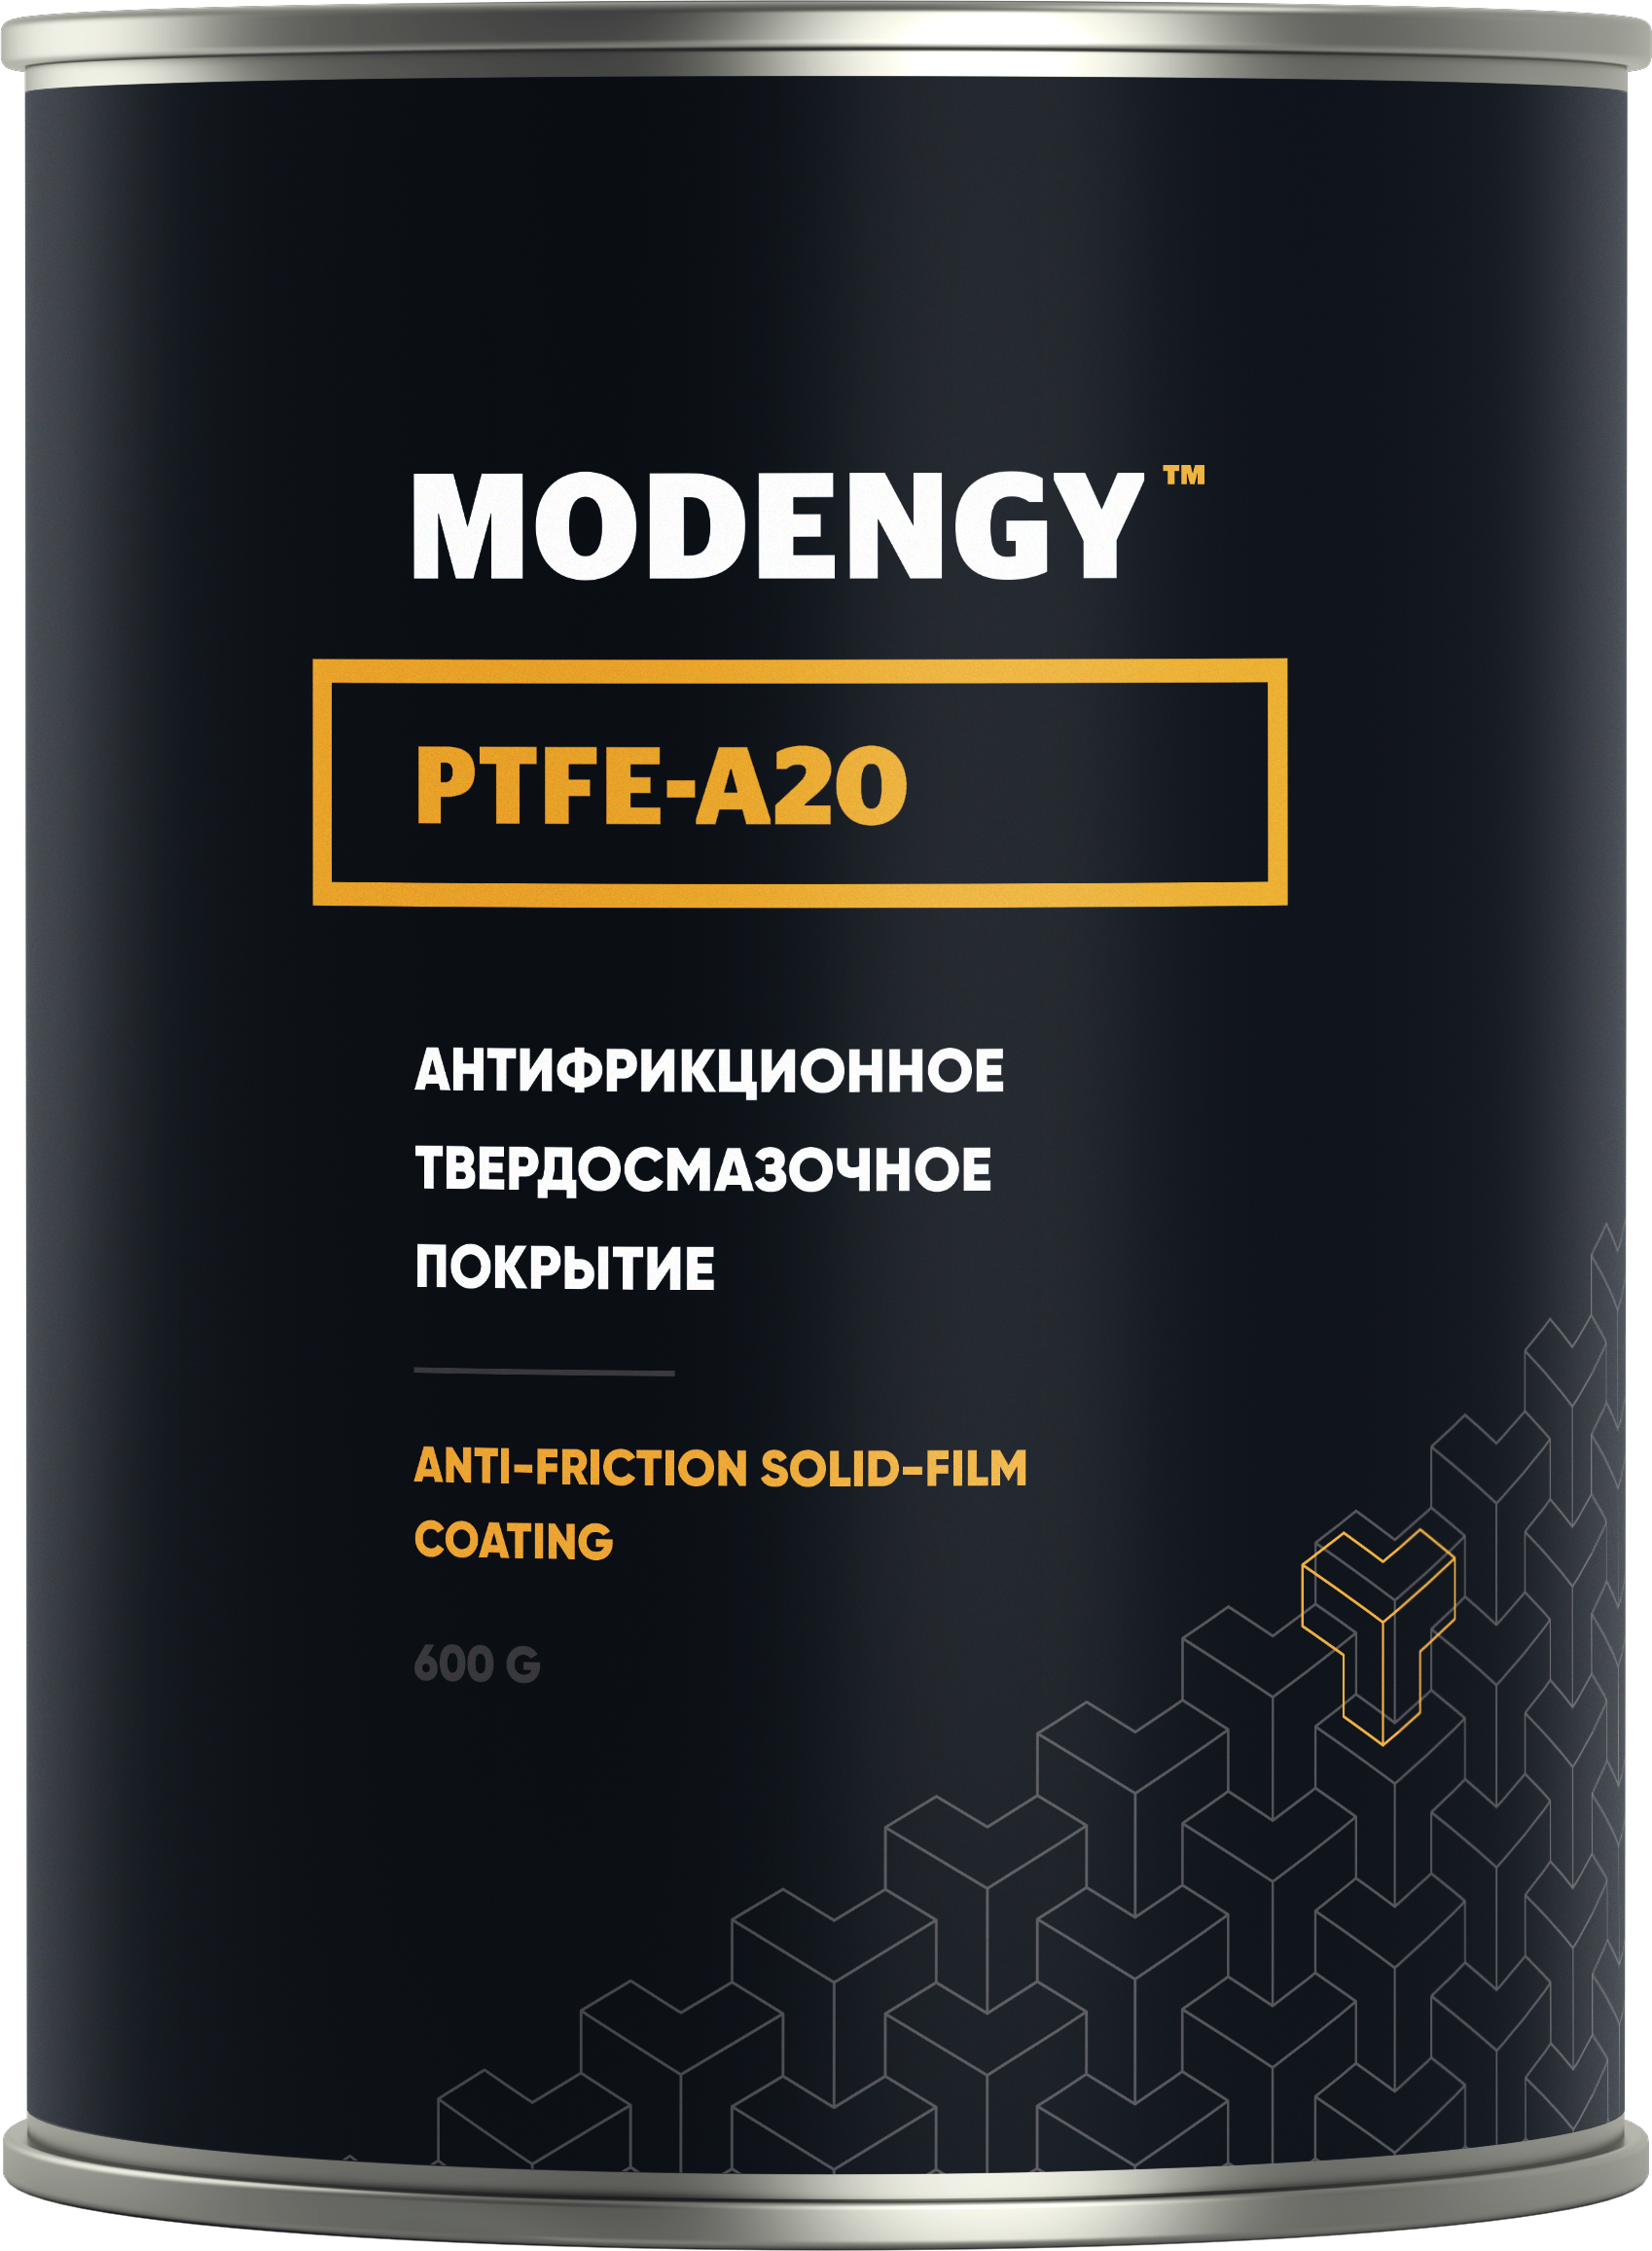 MODENGY PTFE-A20